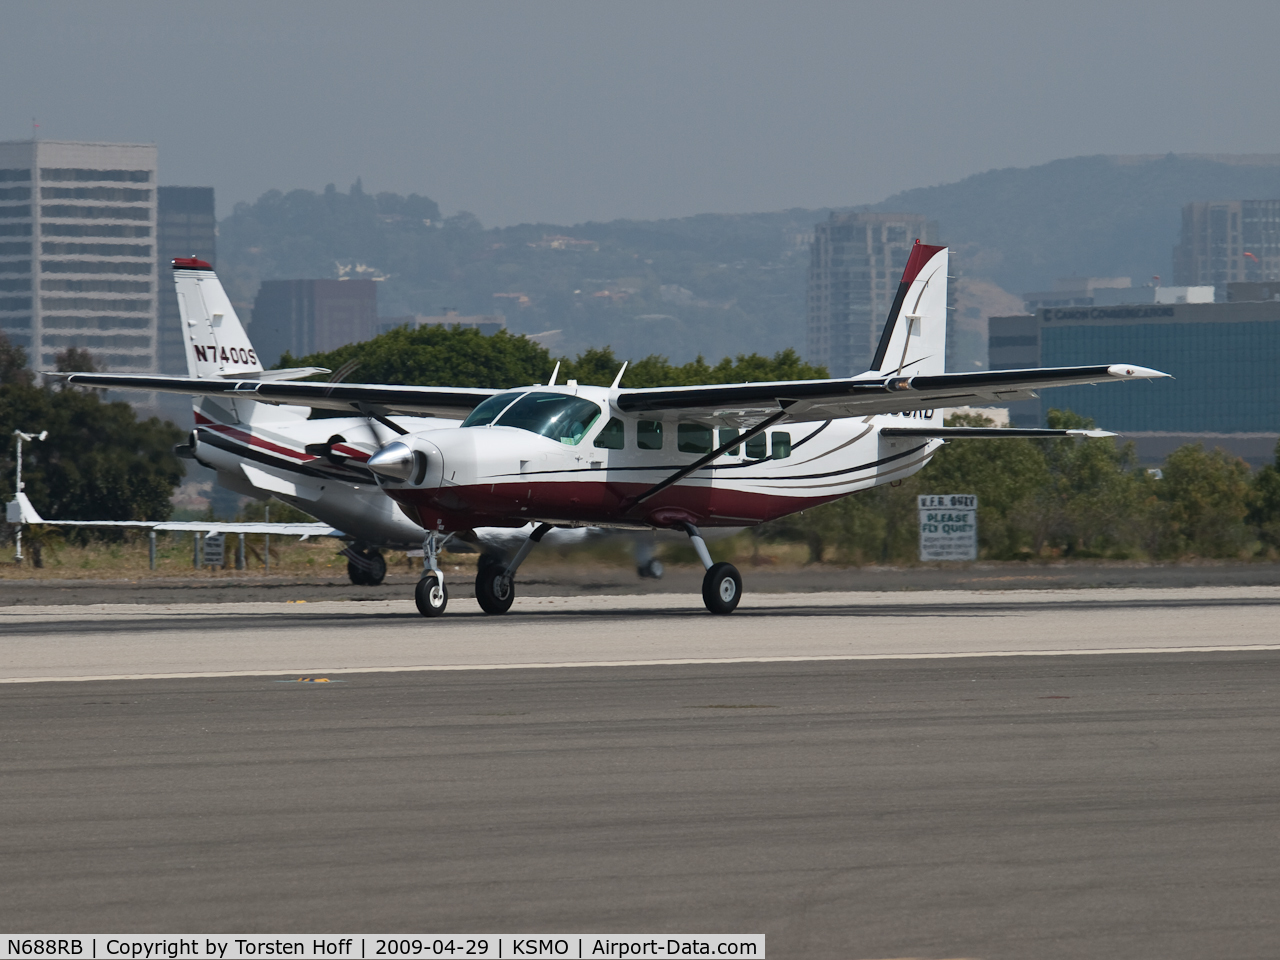 N688RB, 2001 Cessna 208 Caravan I C/N 20800347, N688RB departing from RWY 21